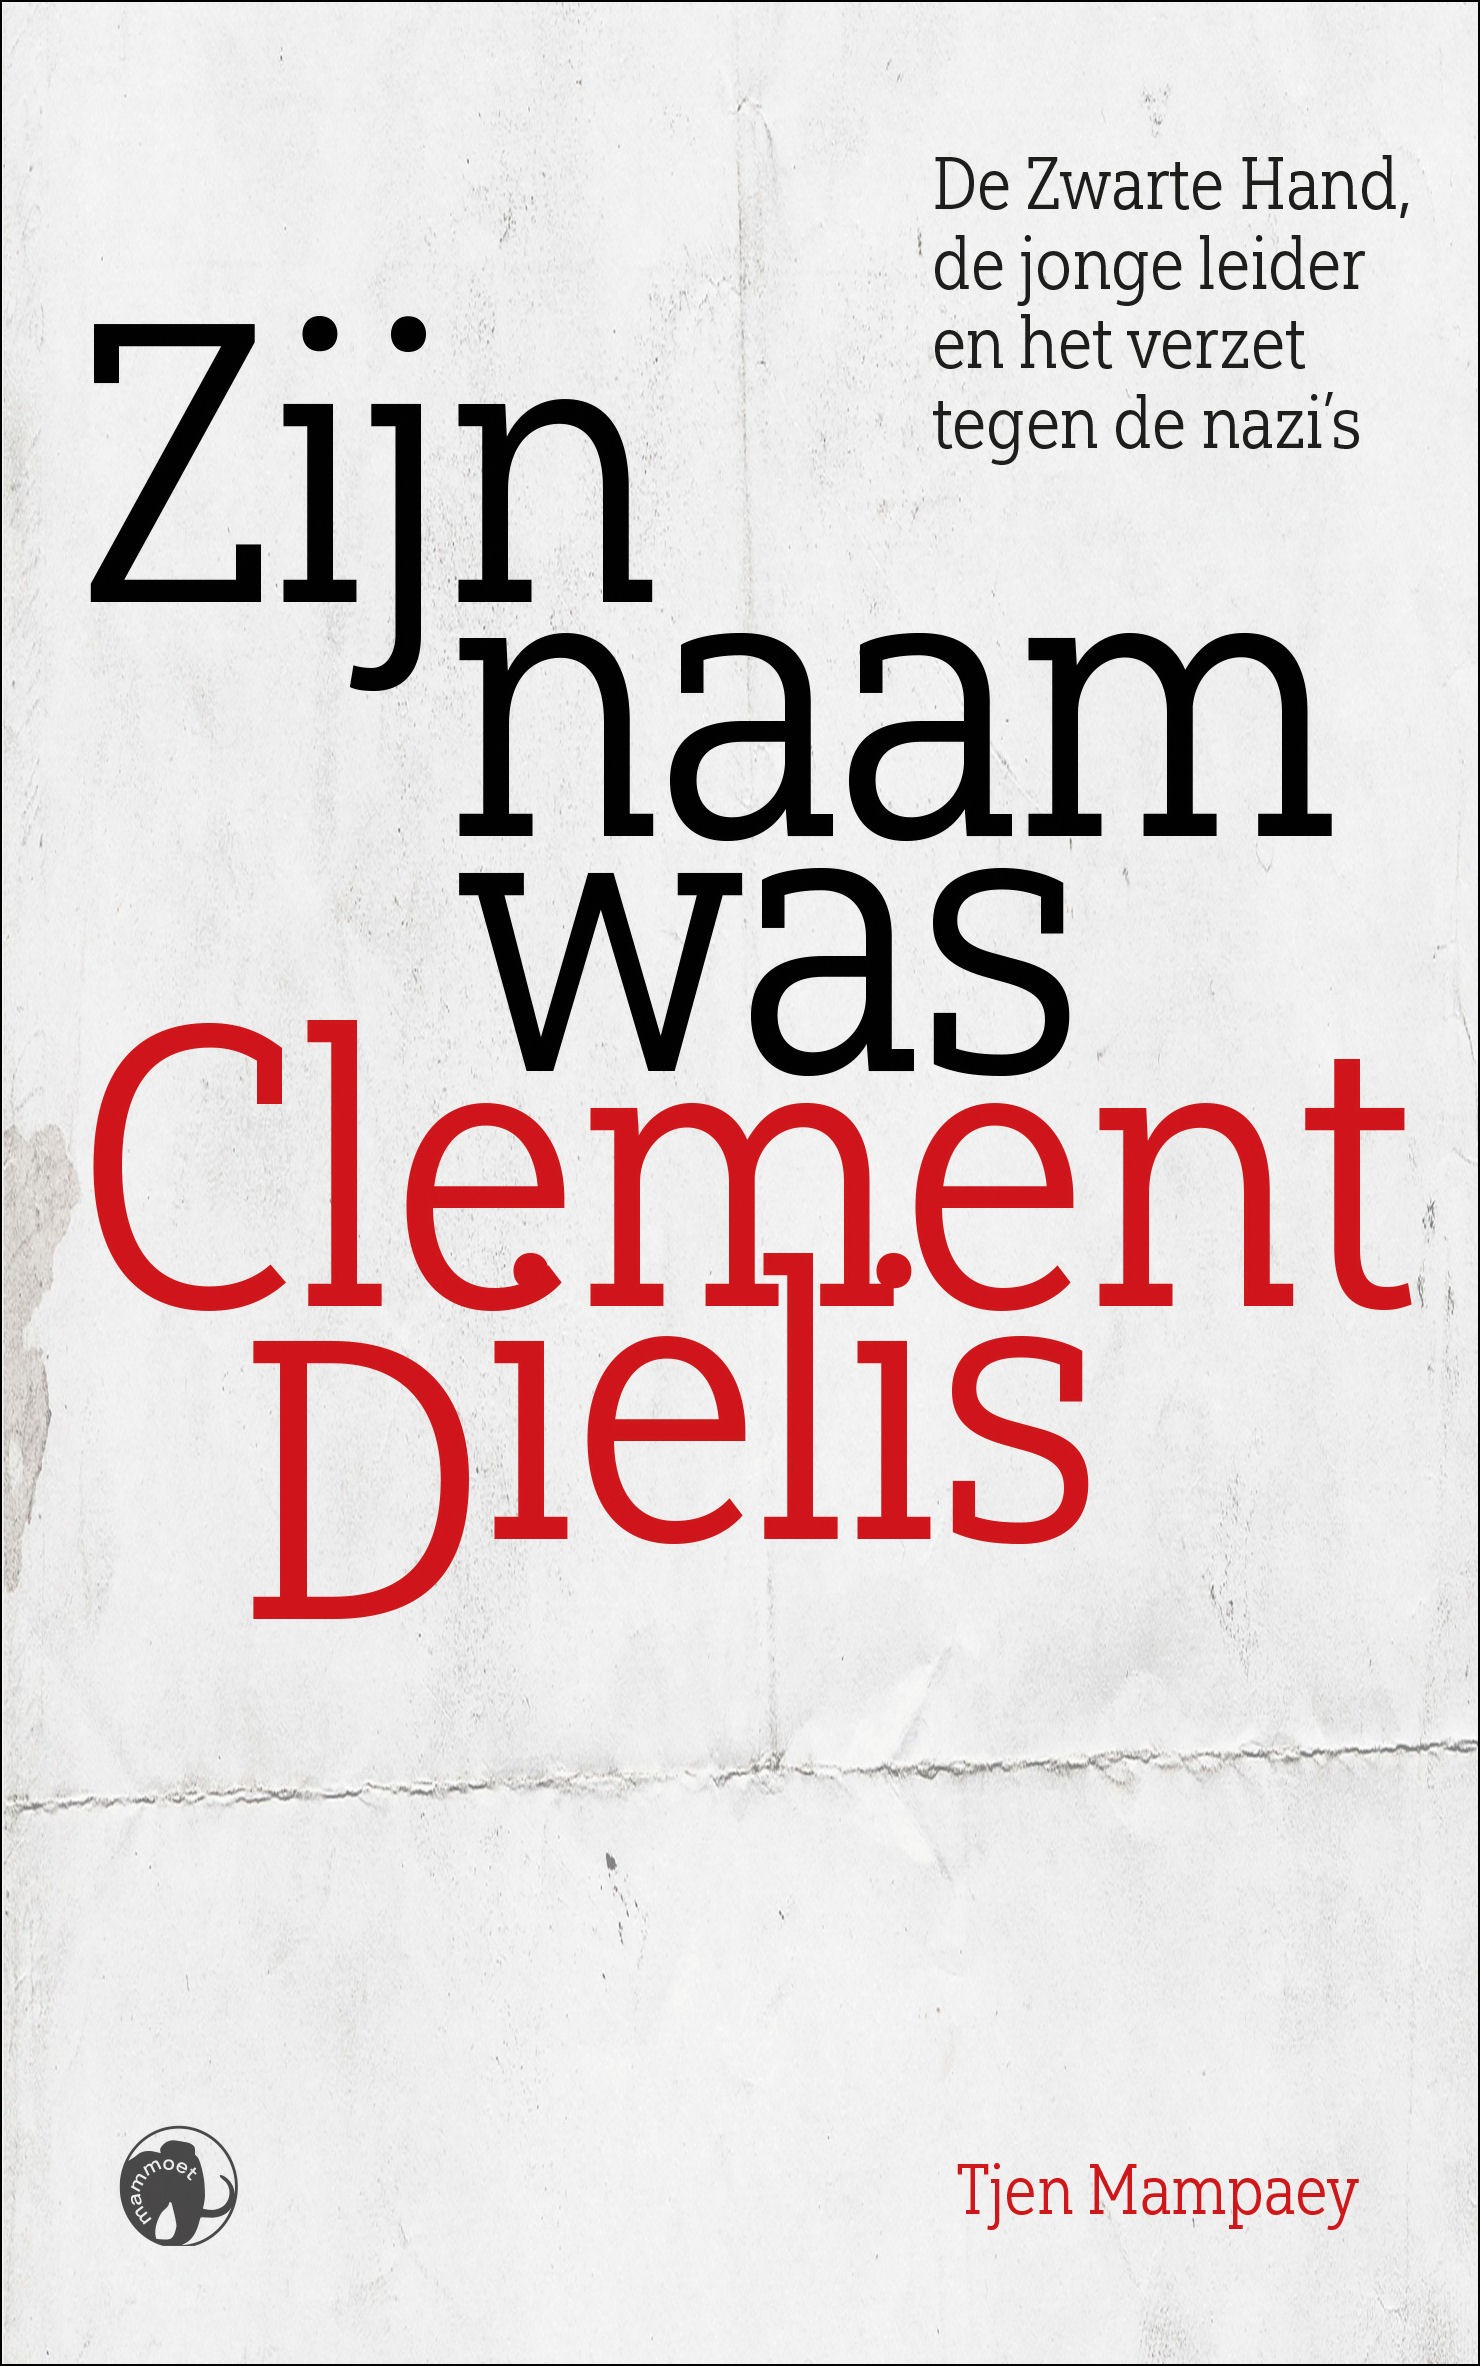 Zijn naam was Clement Dielis